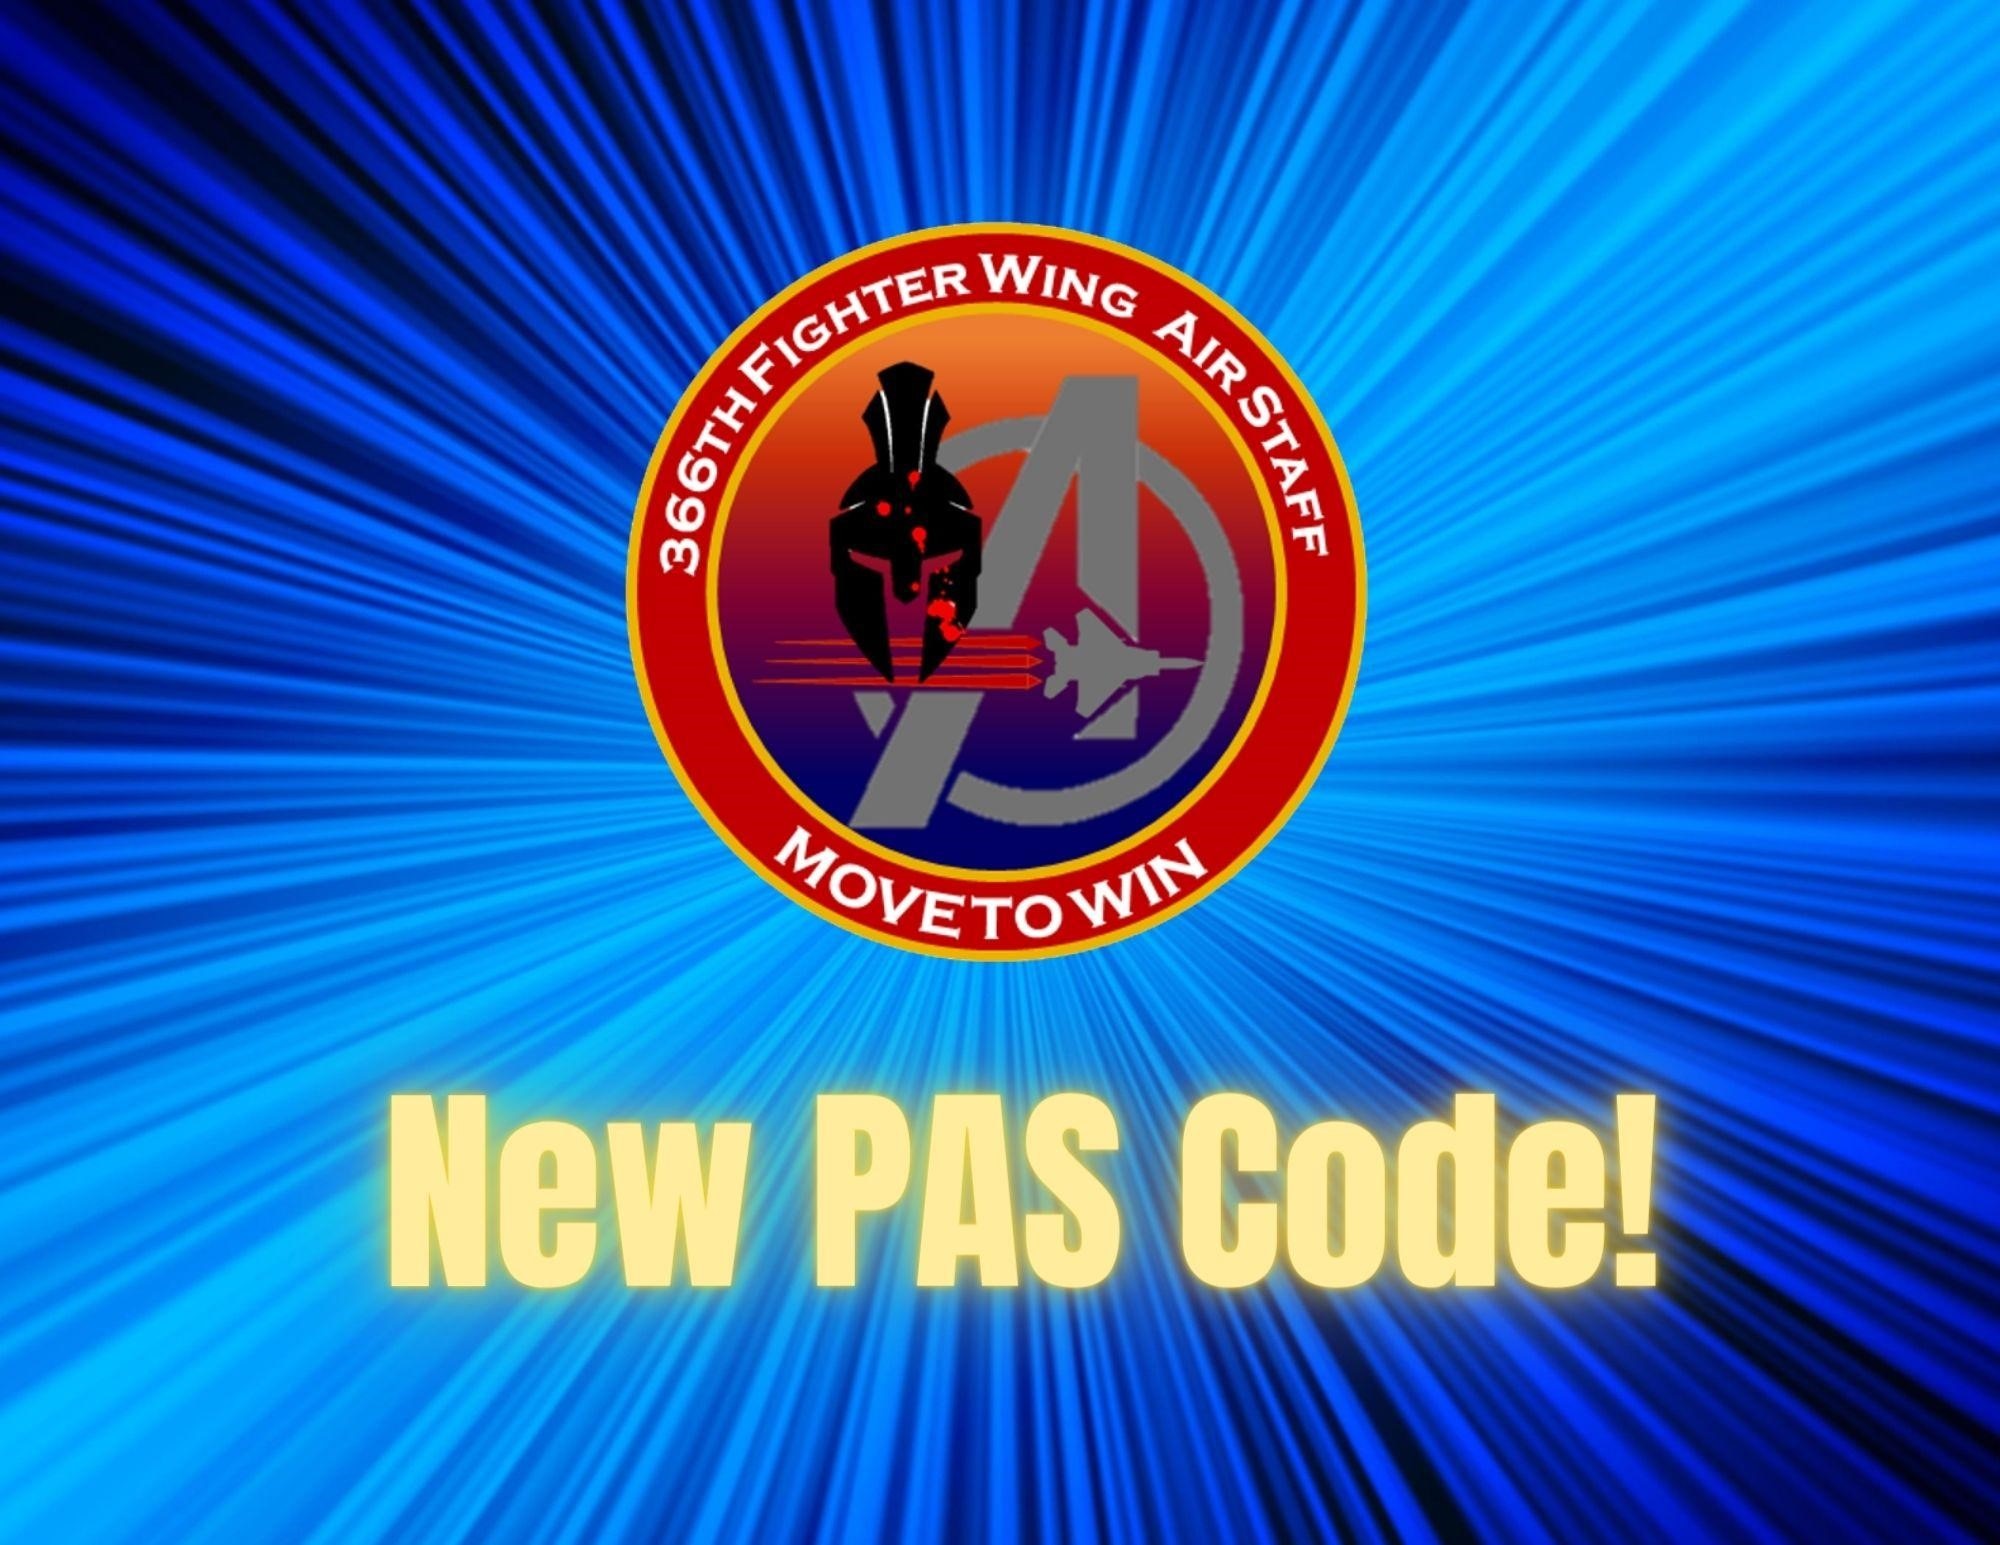 A logo of the A-Staff retrieving a new PAS code.